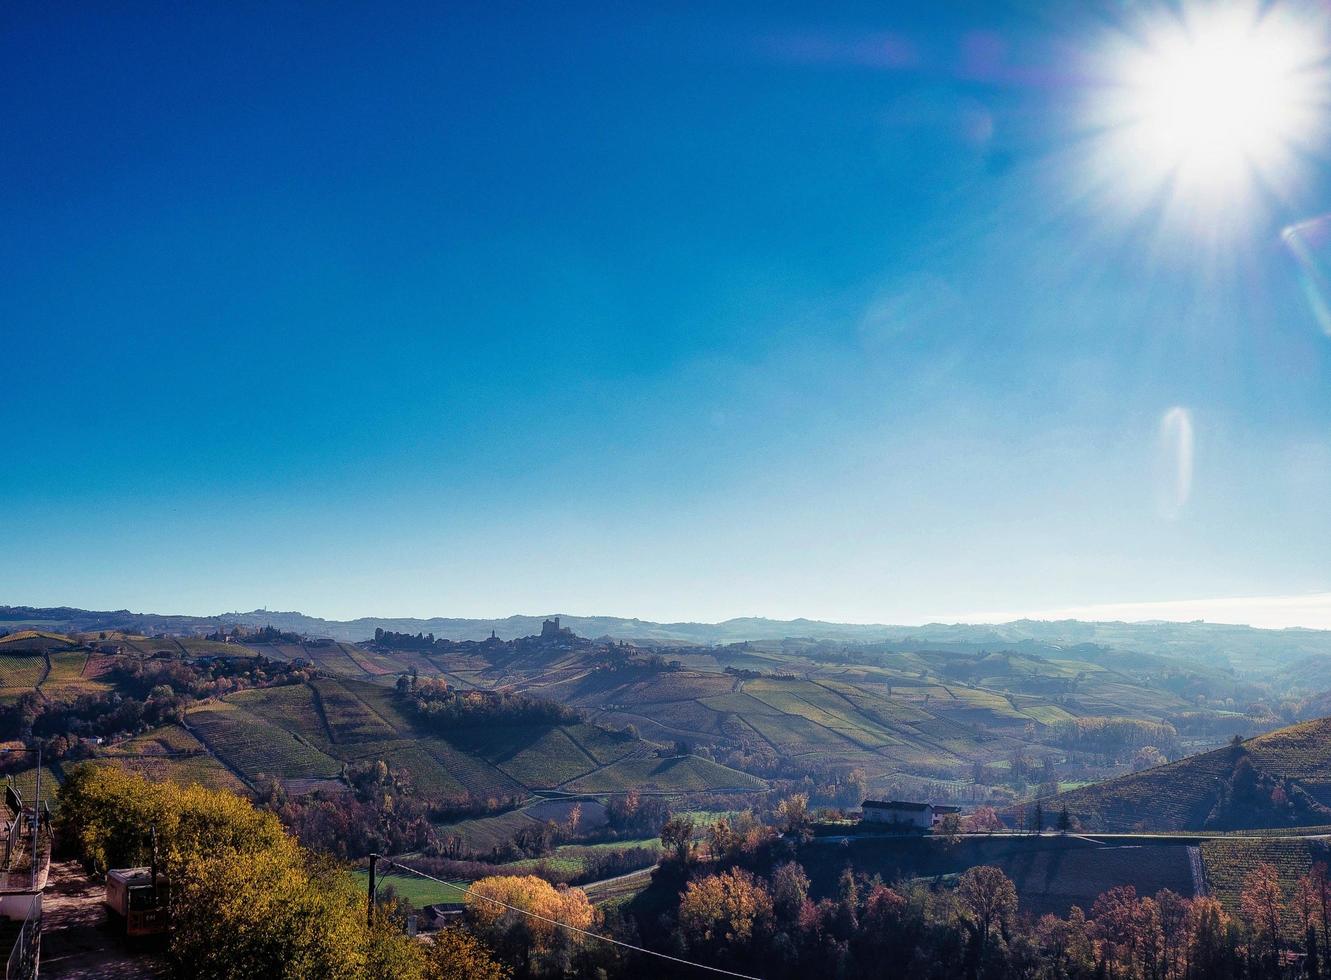 herfst landschappen in de piemontese langhe in de buurt serralunga d'alba, met de helder kleuren van de piemontese herfst foto